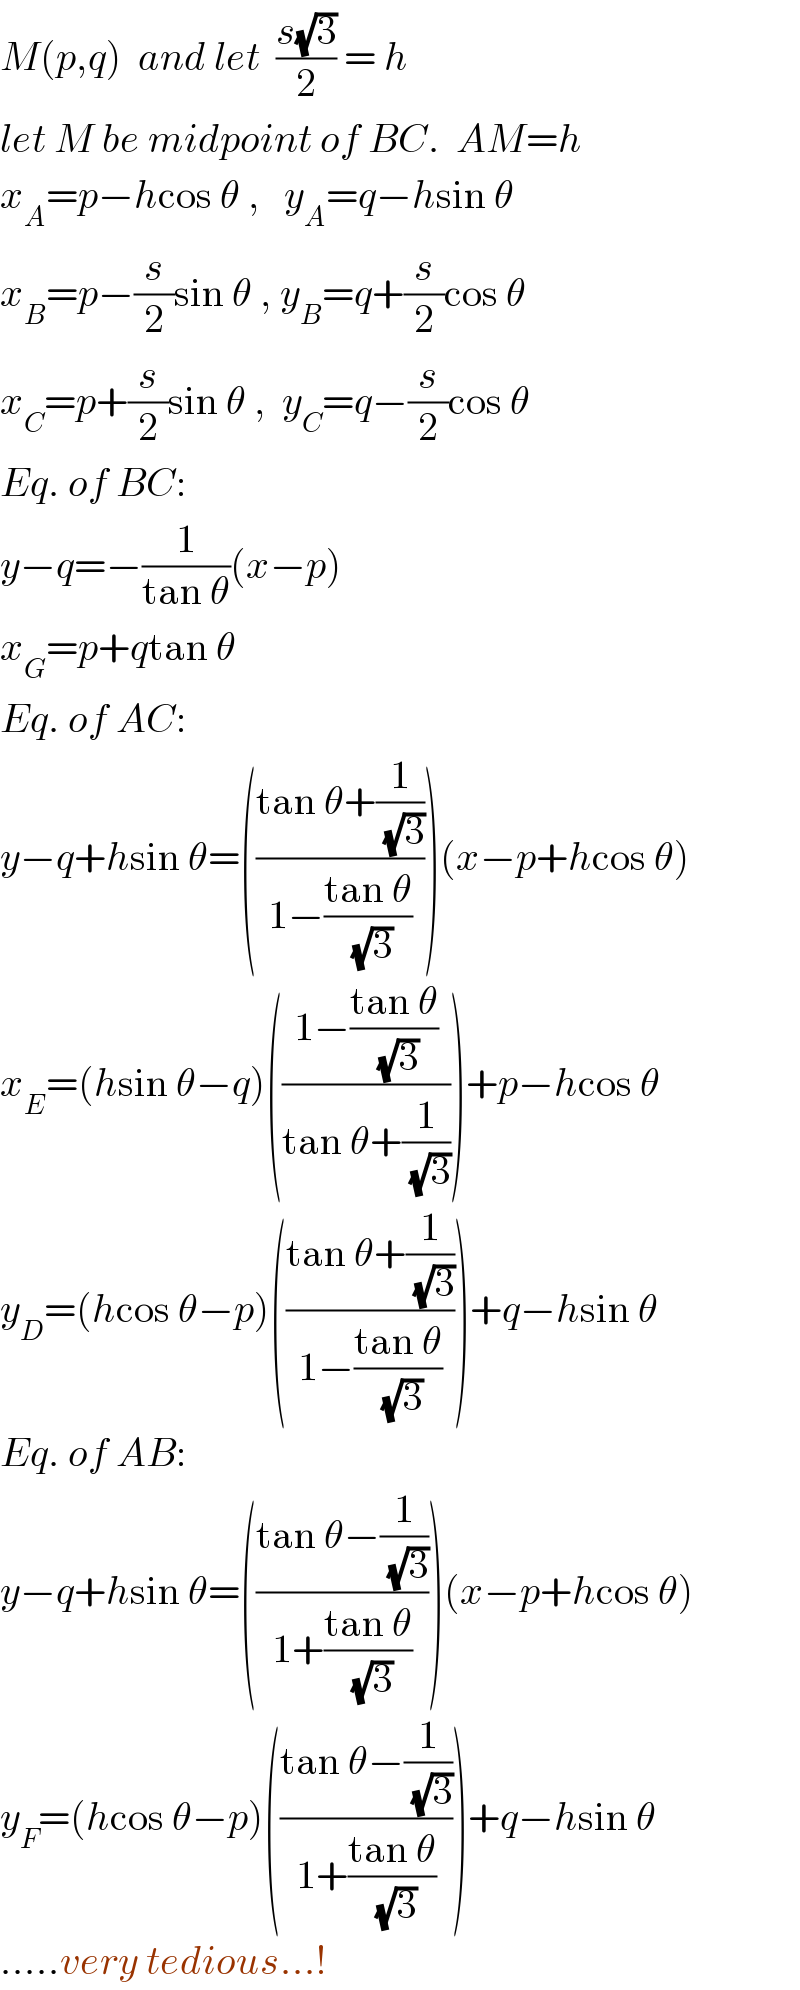 M(p,q)  and let  ((s(√3))/2) = h  let M be midpoint of BC.  AM=h  x_A =p−hcos θ ,   y_A =q−hsin θ  x_B =p−(s/2)sin θ , y_B =q+(s/2)cos θ  x_C =p+(s/2)sin θ ,  y_C =q−(s/2)cos θ  Eq. of BC:  y−q=−(1/(tan θ))(x−p)  x_G =p+qtan θ  Eq. of AC:  y−q+hsin θ=(((tan θ+(1/(√3)))/(1−((tan θ)/(√3)))))(x−p+hcos θ)  x_E =(hsin θ−q)(((1−((tan θ)/(√3)))/(tan θ+(1/(√3)))))+p−hcos θ  y_D =(hcos θ−p)(((tan θ+(1/(√3)))/(1−((tan θ)/(√3)))))+q−hsin θ  Eq. of AB:  y−q+hsin θ=(((tan θ−(1/(√3)))/(1+((tan θ)/(√3)))))(x−p+hcos θ)  y_F =(hcos θ−p)(((tan θ−(1/(√3)))/(1+((tan θ)/(√3)))))+q−hsin θ  .....very tedious...!  